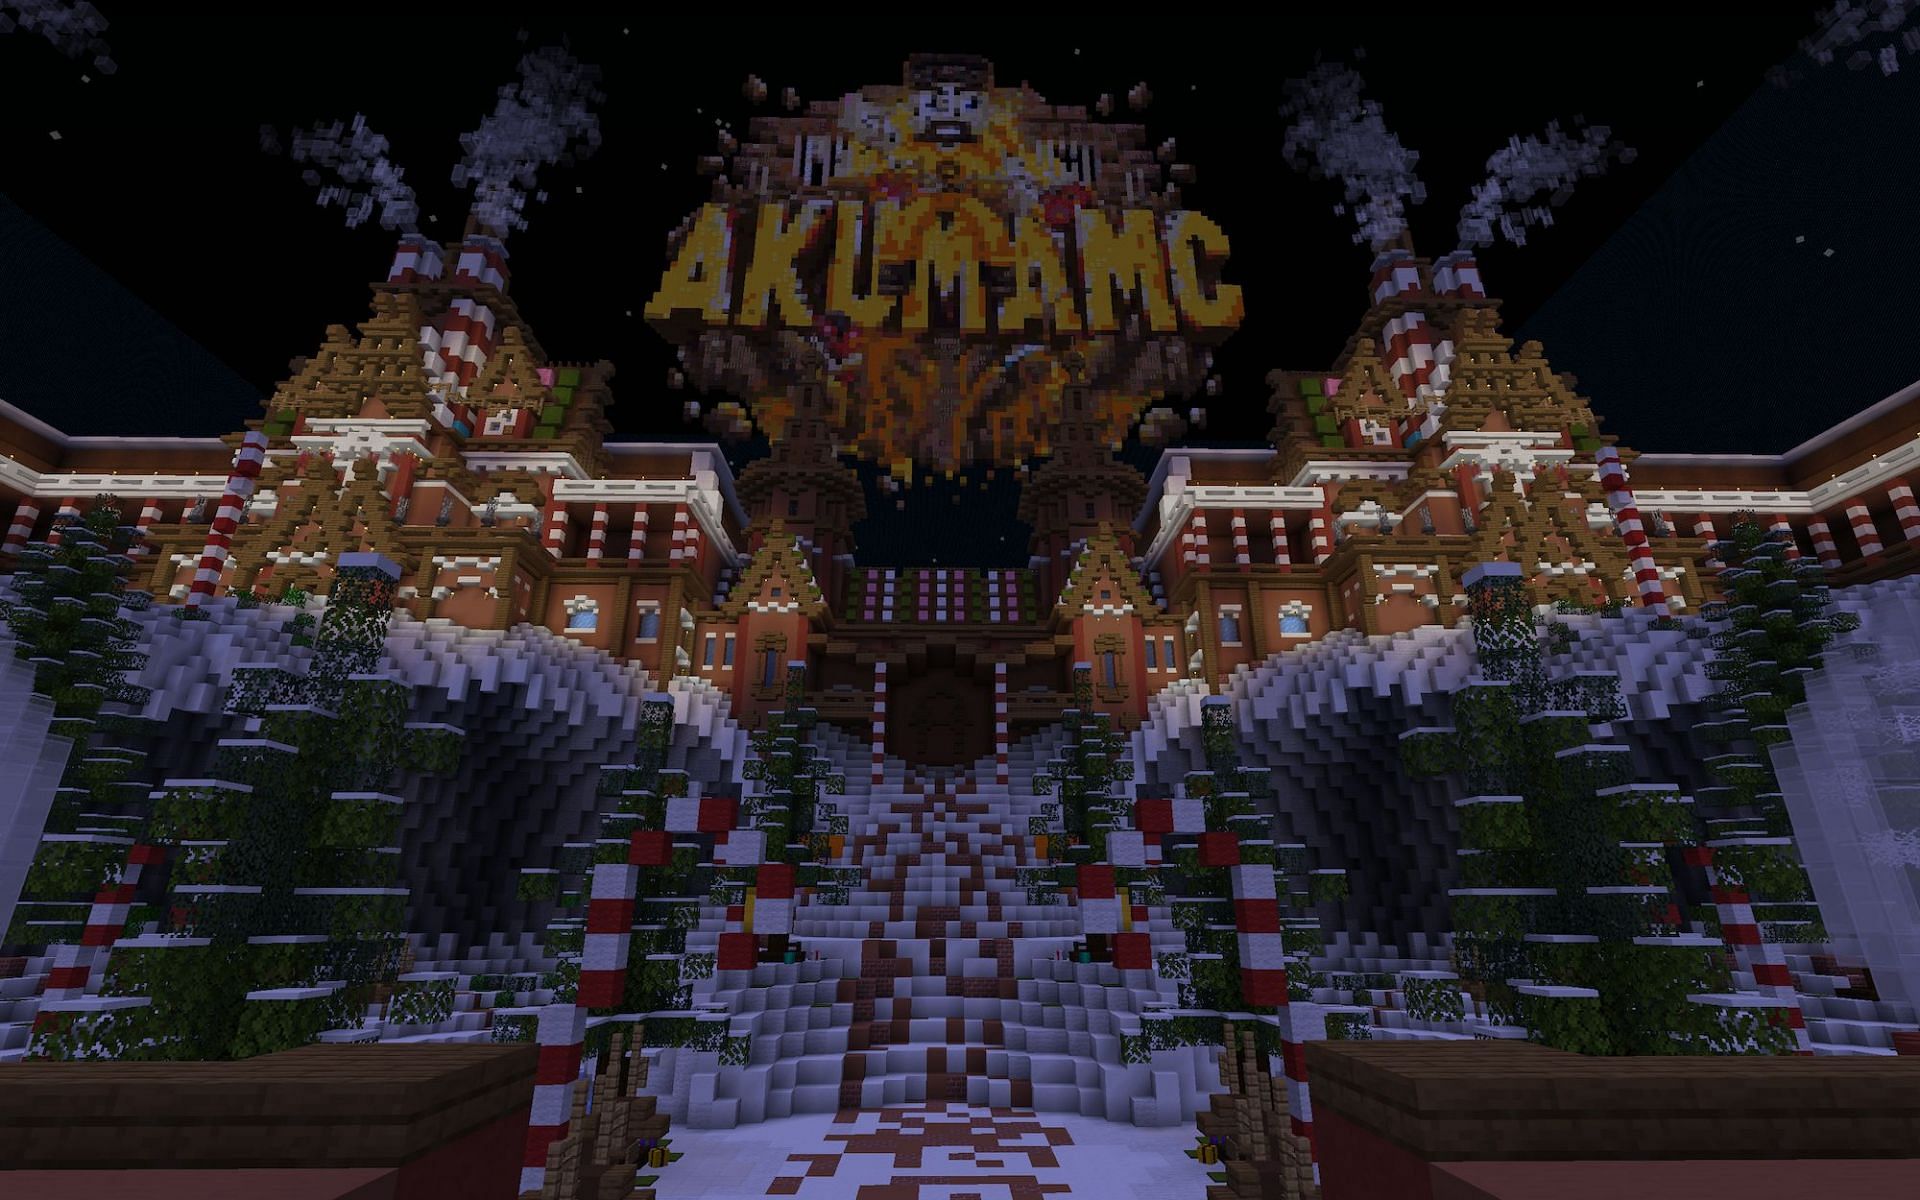 AkumaMC [Image via Minecraft]